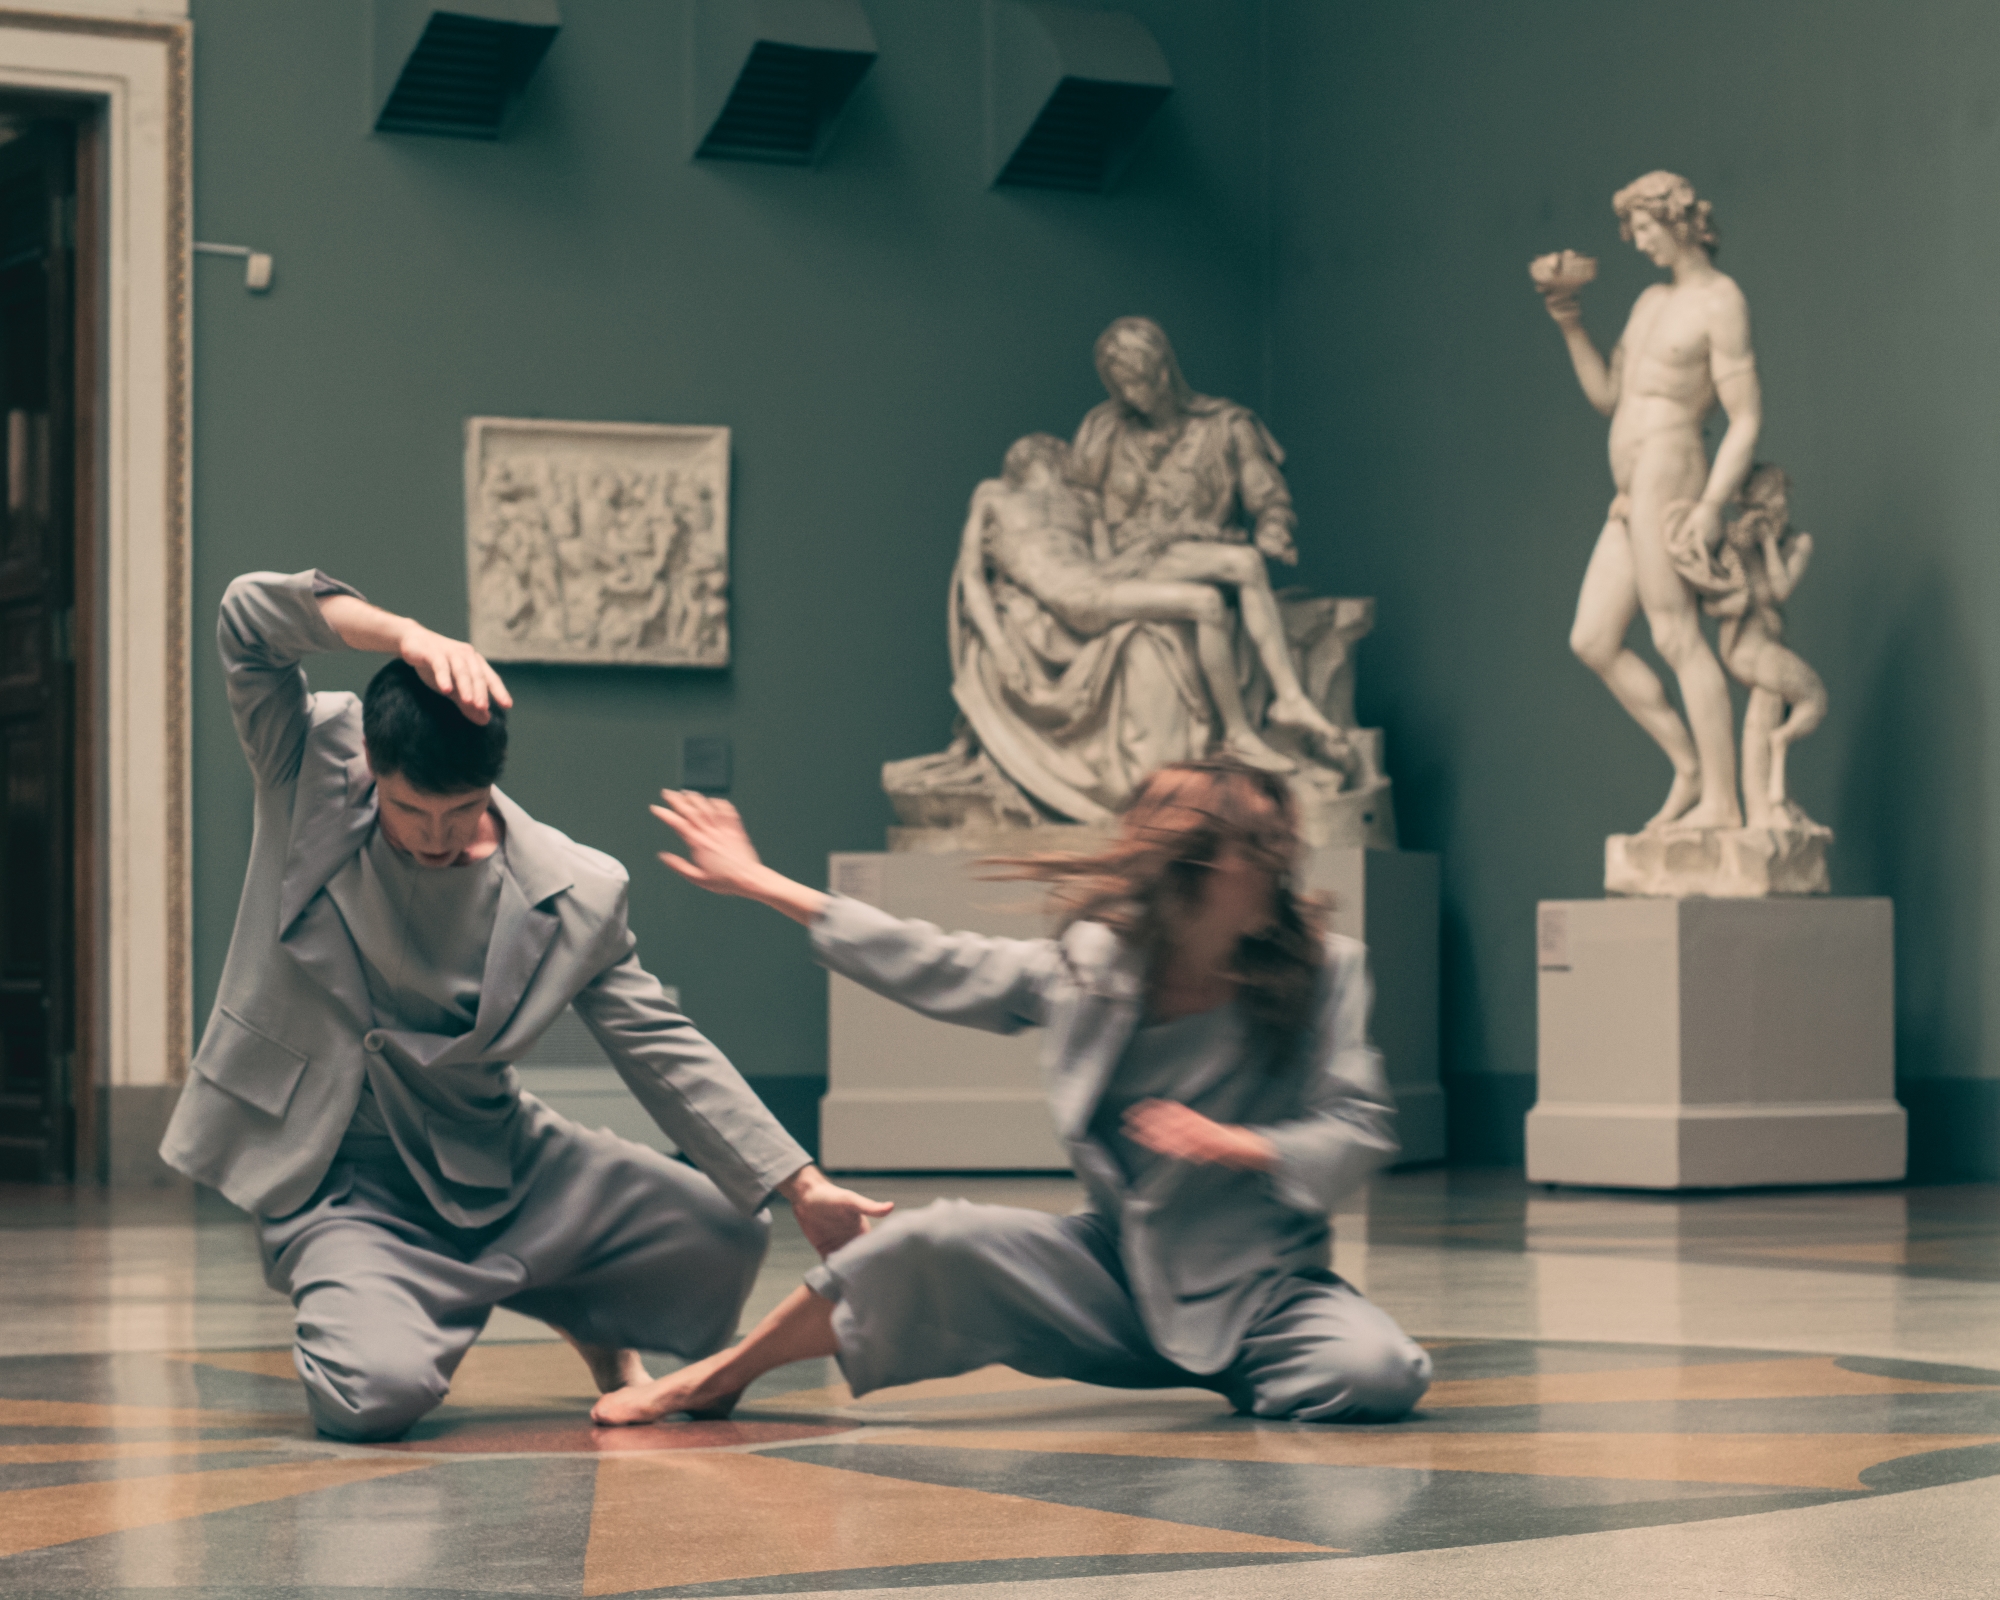 На фото - танцовщики в зале Микеланджело (хореограф Анна Щеклеина). Фото Петра Сильвестрова (предоставлено пресс-службой проекта).